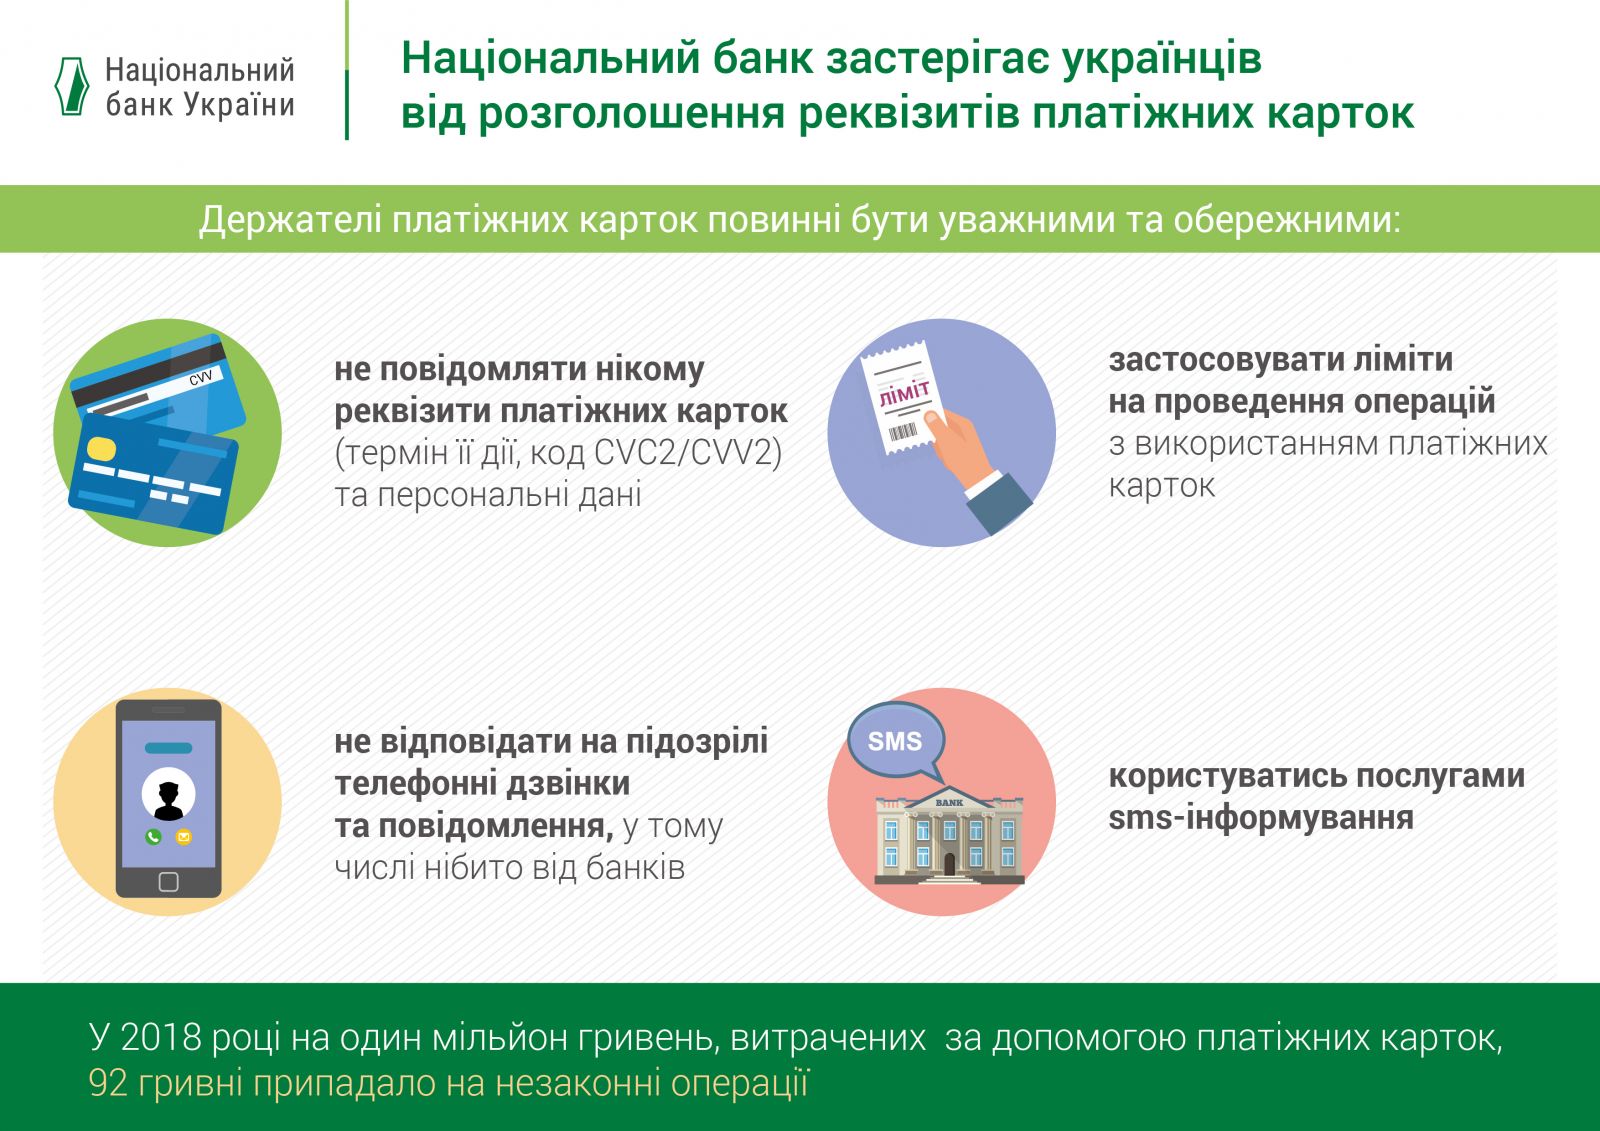 В Украине участились махинации с банковскими карточками, - НБУ